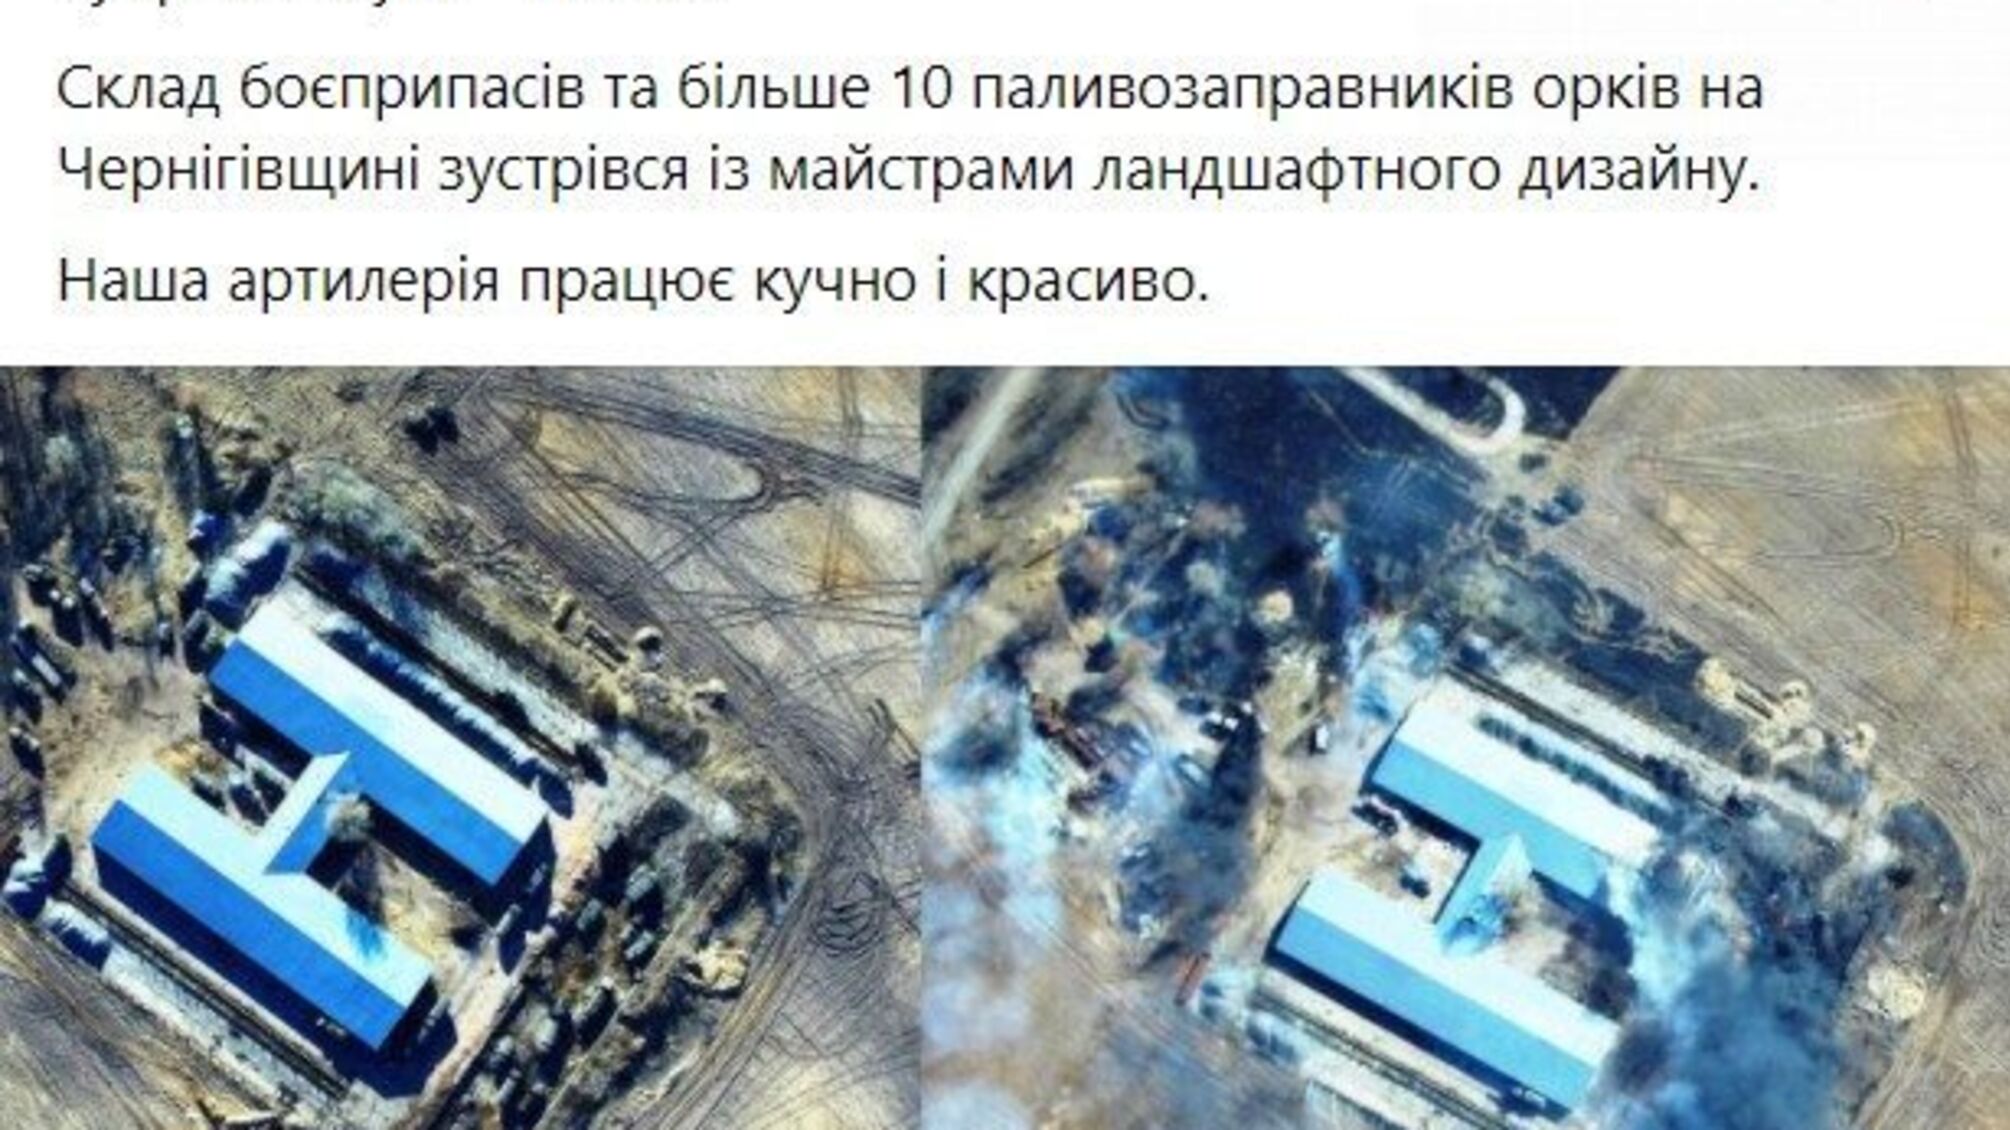 В Черниговской области благодаря украинской артиллерии российская армия обеднела бензовозами и боеприпасами